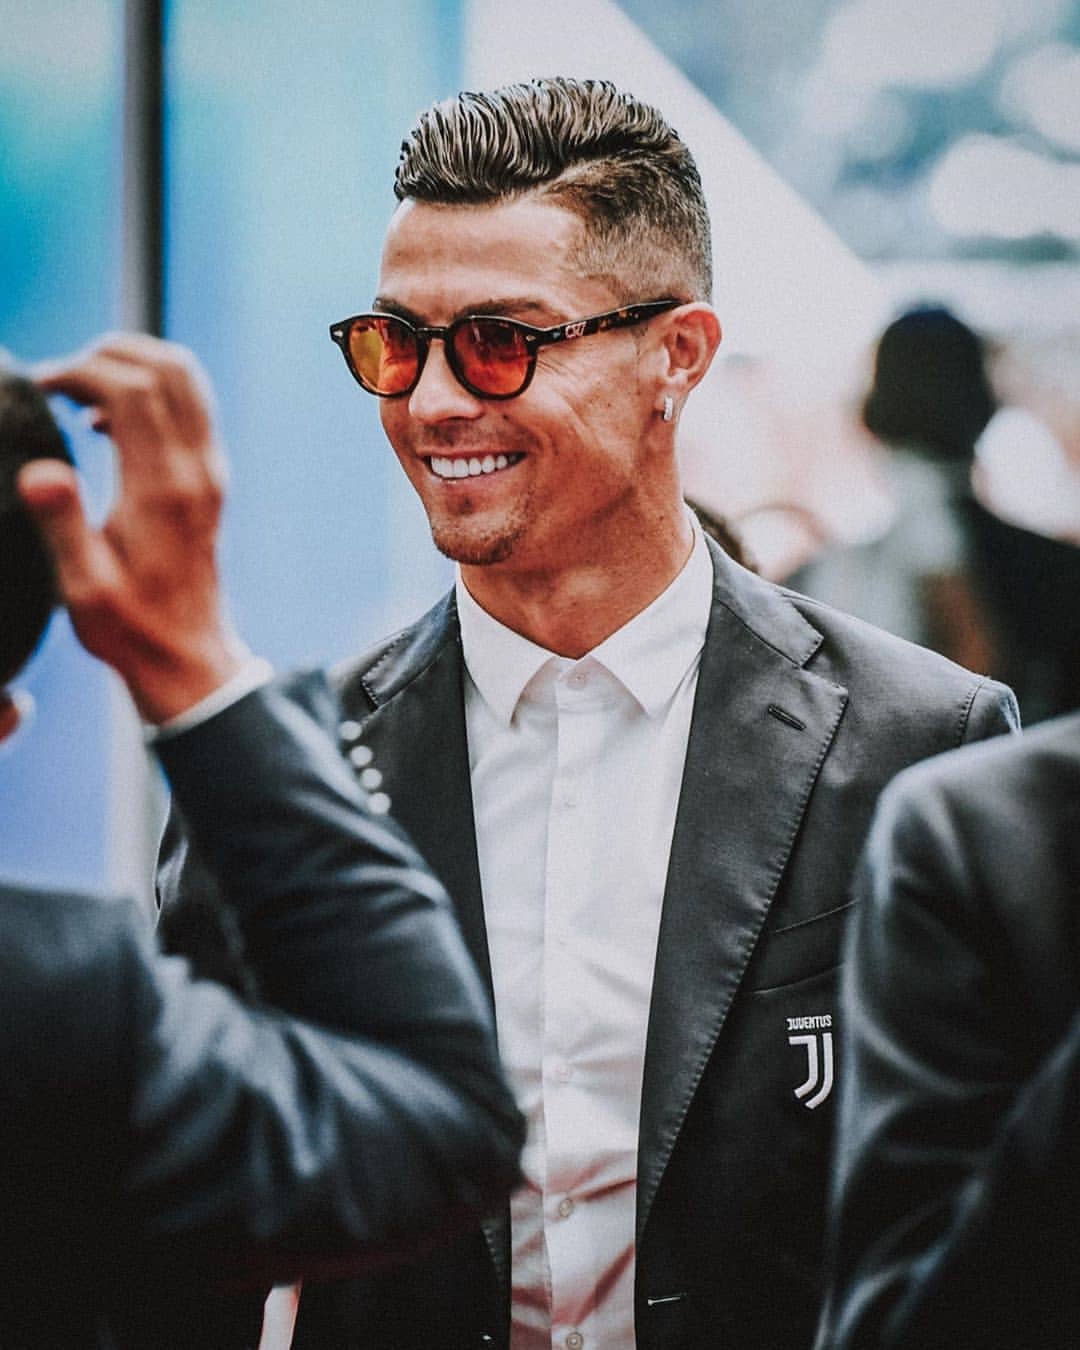 Cười tươi rực rỡ, hình ảnh ronaldo cười chính là tâm điểm thu hút của người hâm mộ bóng đá. Vào xem những bức ảnh này để cảm nhận được sự hồn nhiên và gần gũi của siêu sao Ronaldo.